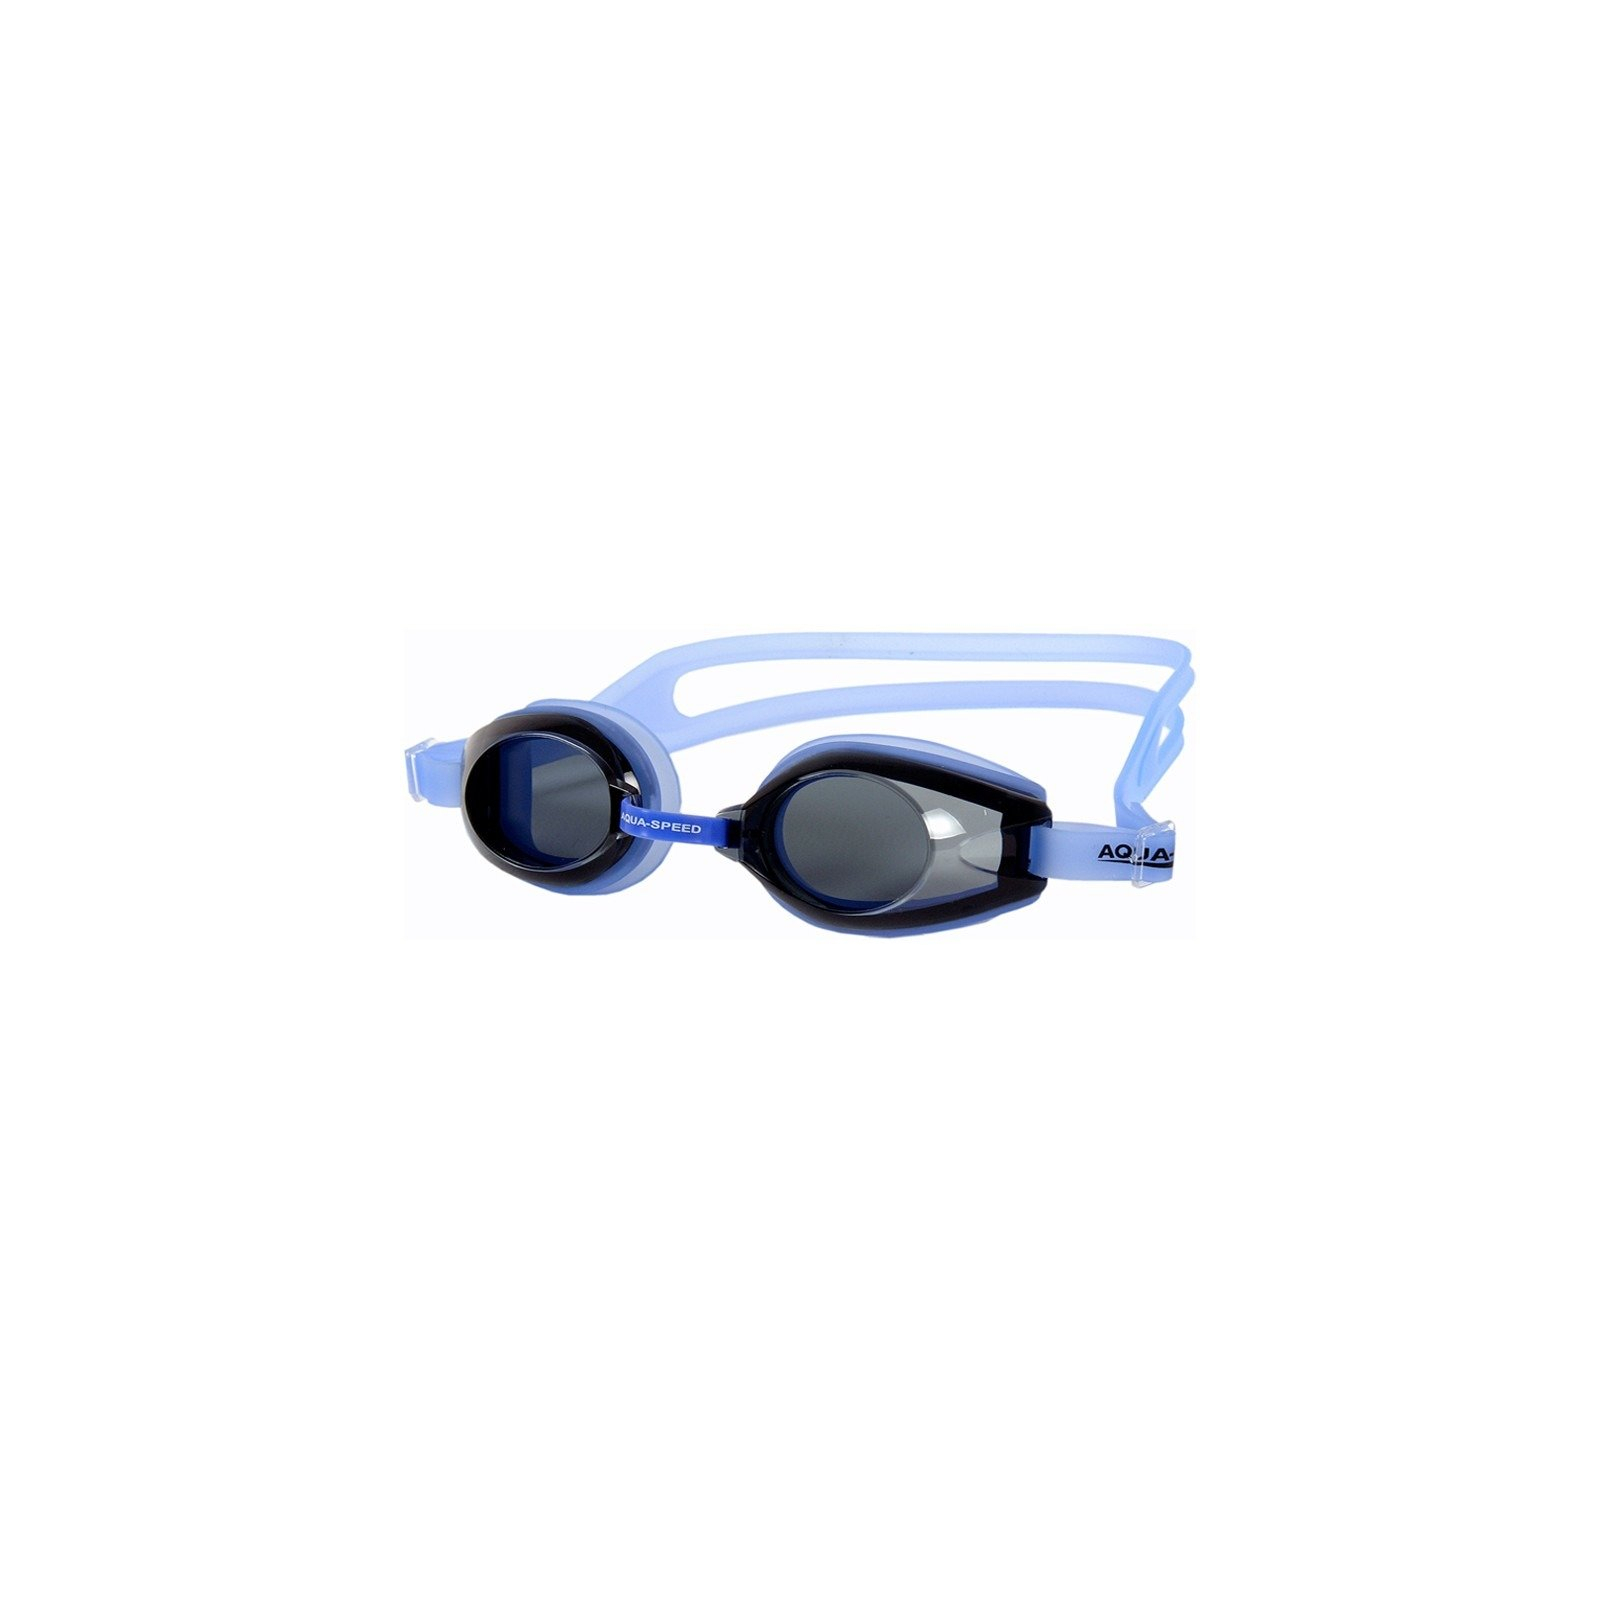 Окуляри для плавання Aqua Speed Avanti 007-211 чорний, блакитний OSFM (5908217628985)